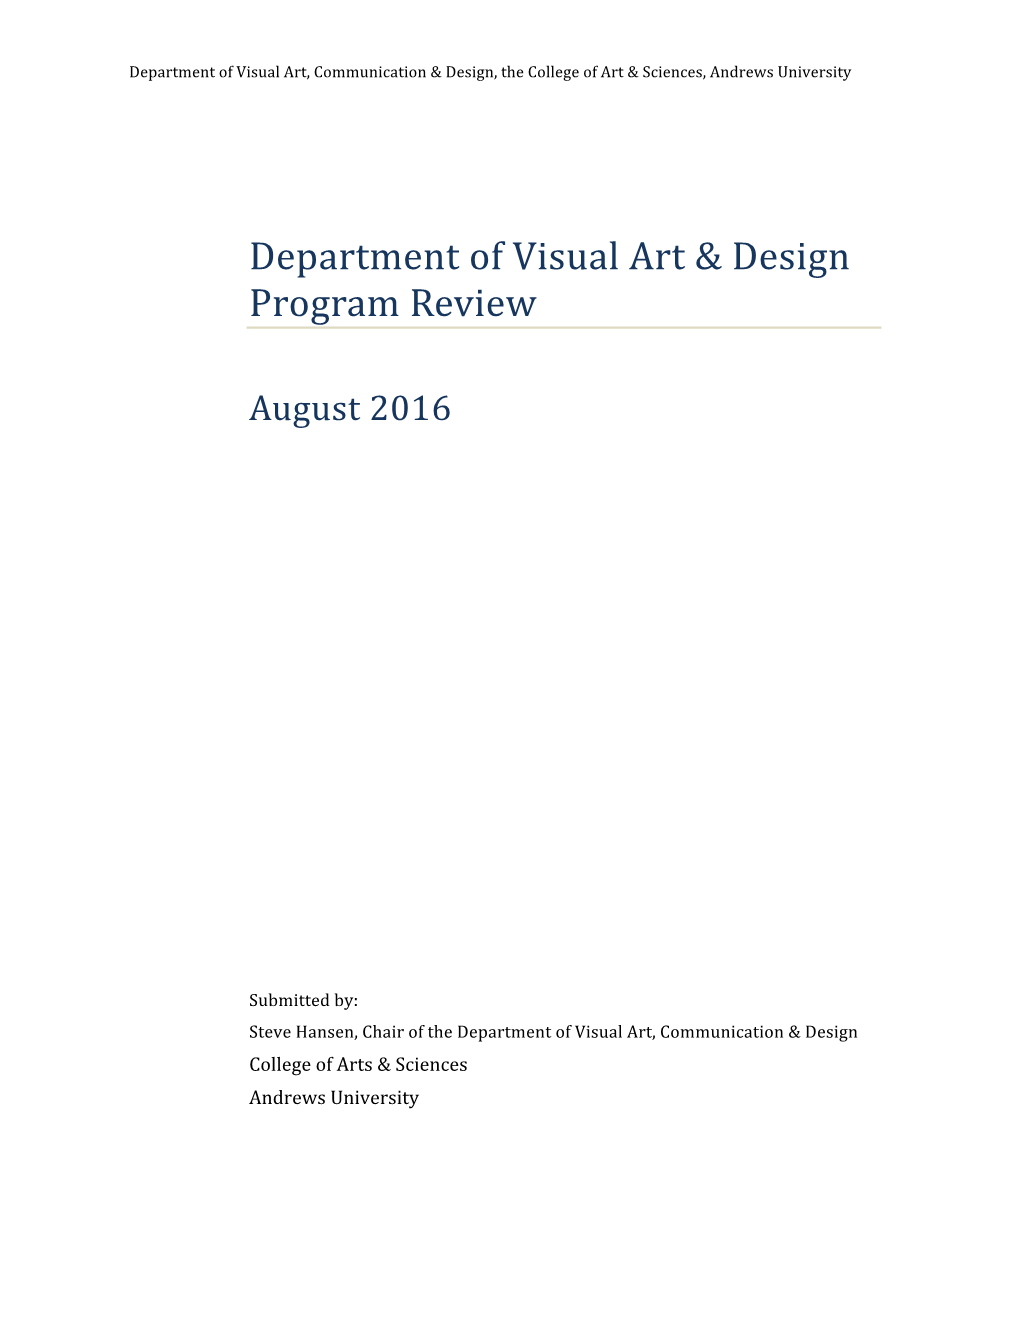 Department of Visual Art & Design Program Review